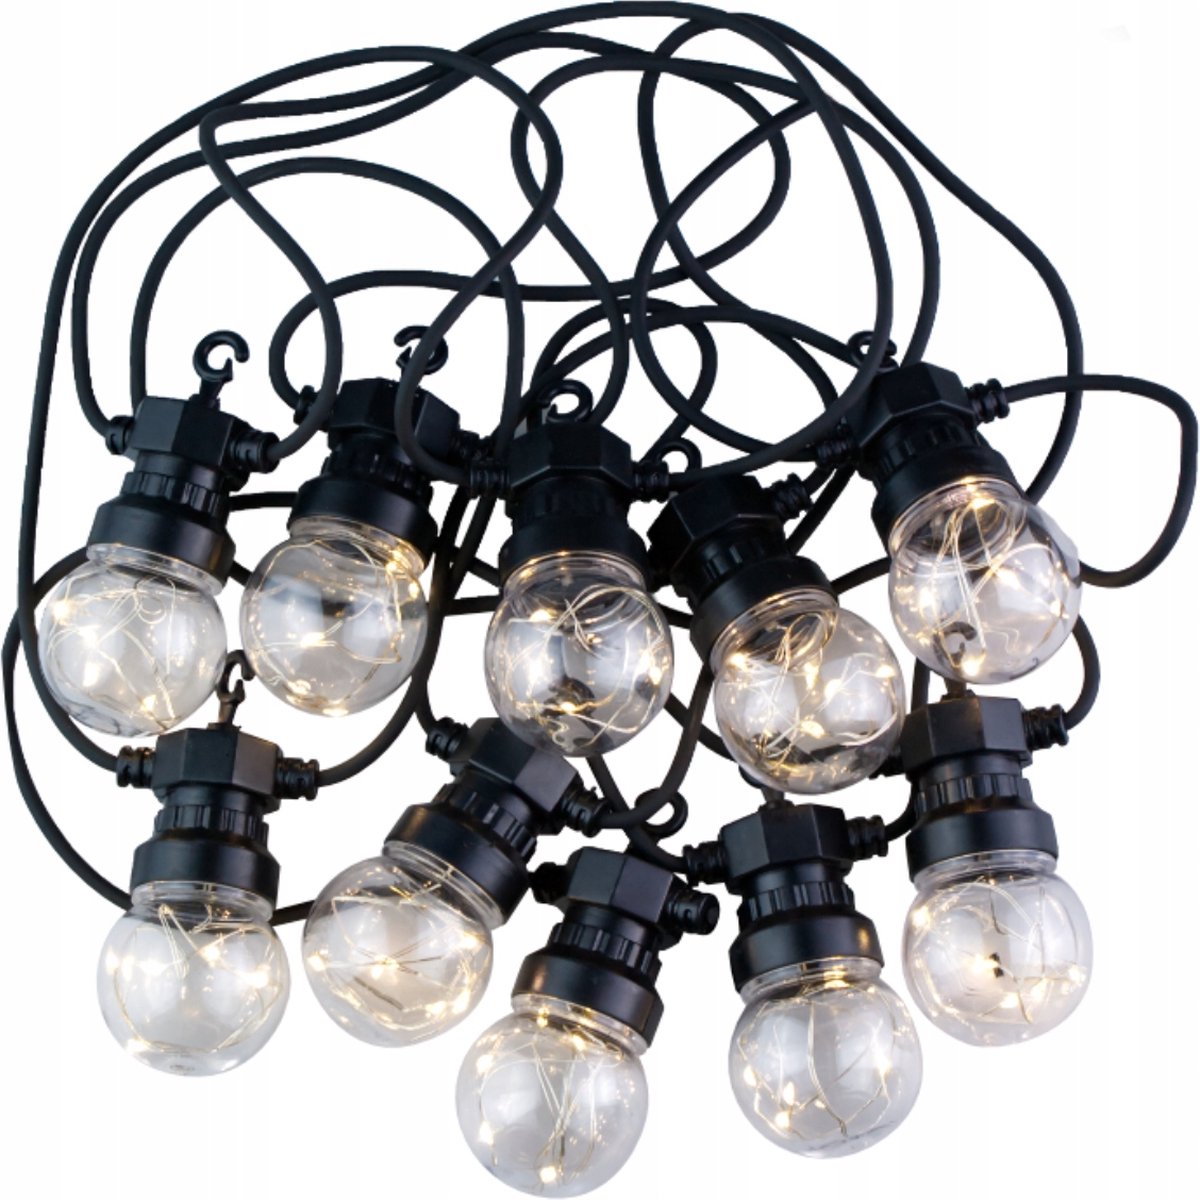 Lichtsnoer 7.5 m - 10 Lampjes - Binnen/Buiten Verlichting - Feestverlichting 50Led - Warm Wit